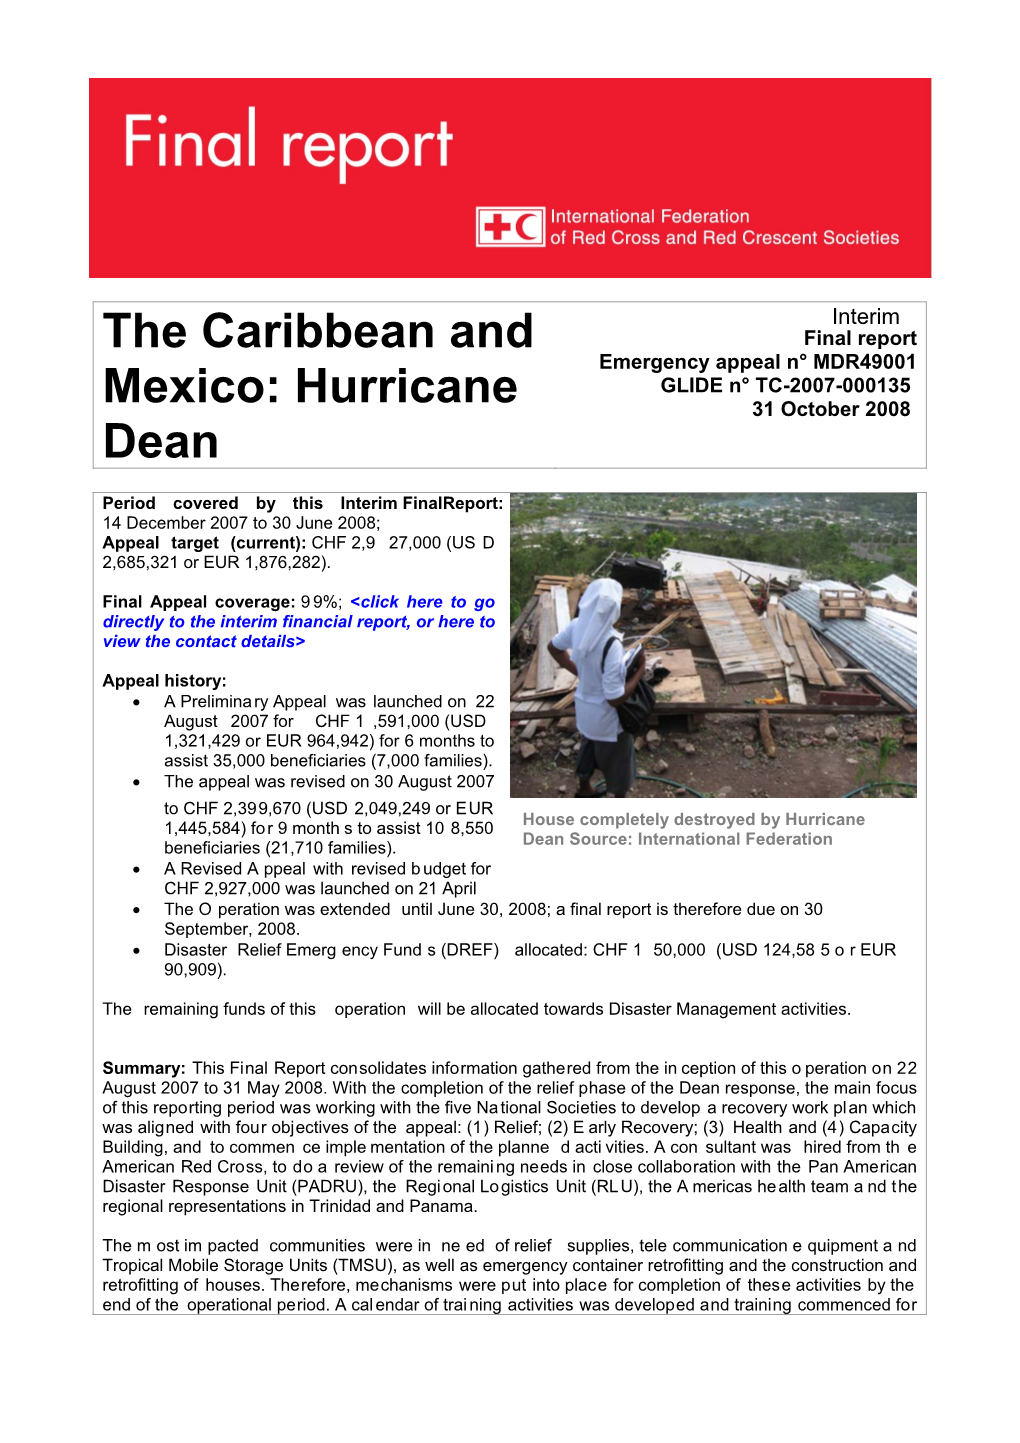 The Caribbean and Mexico: Hurricane Dean